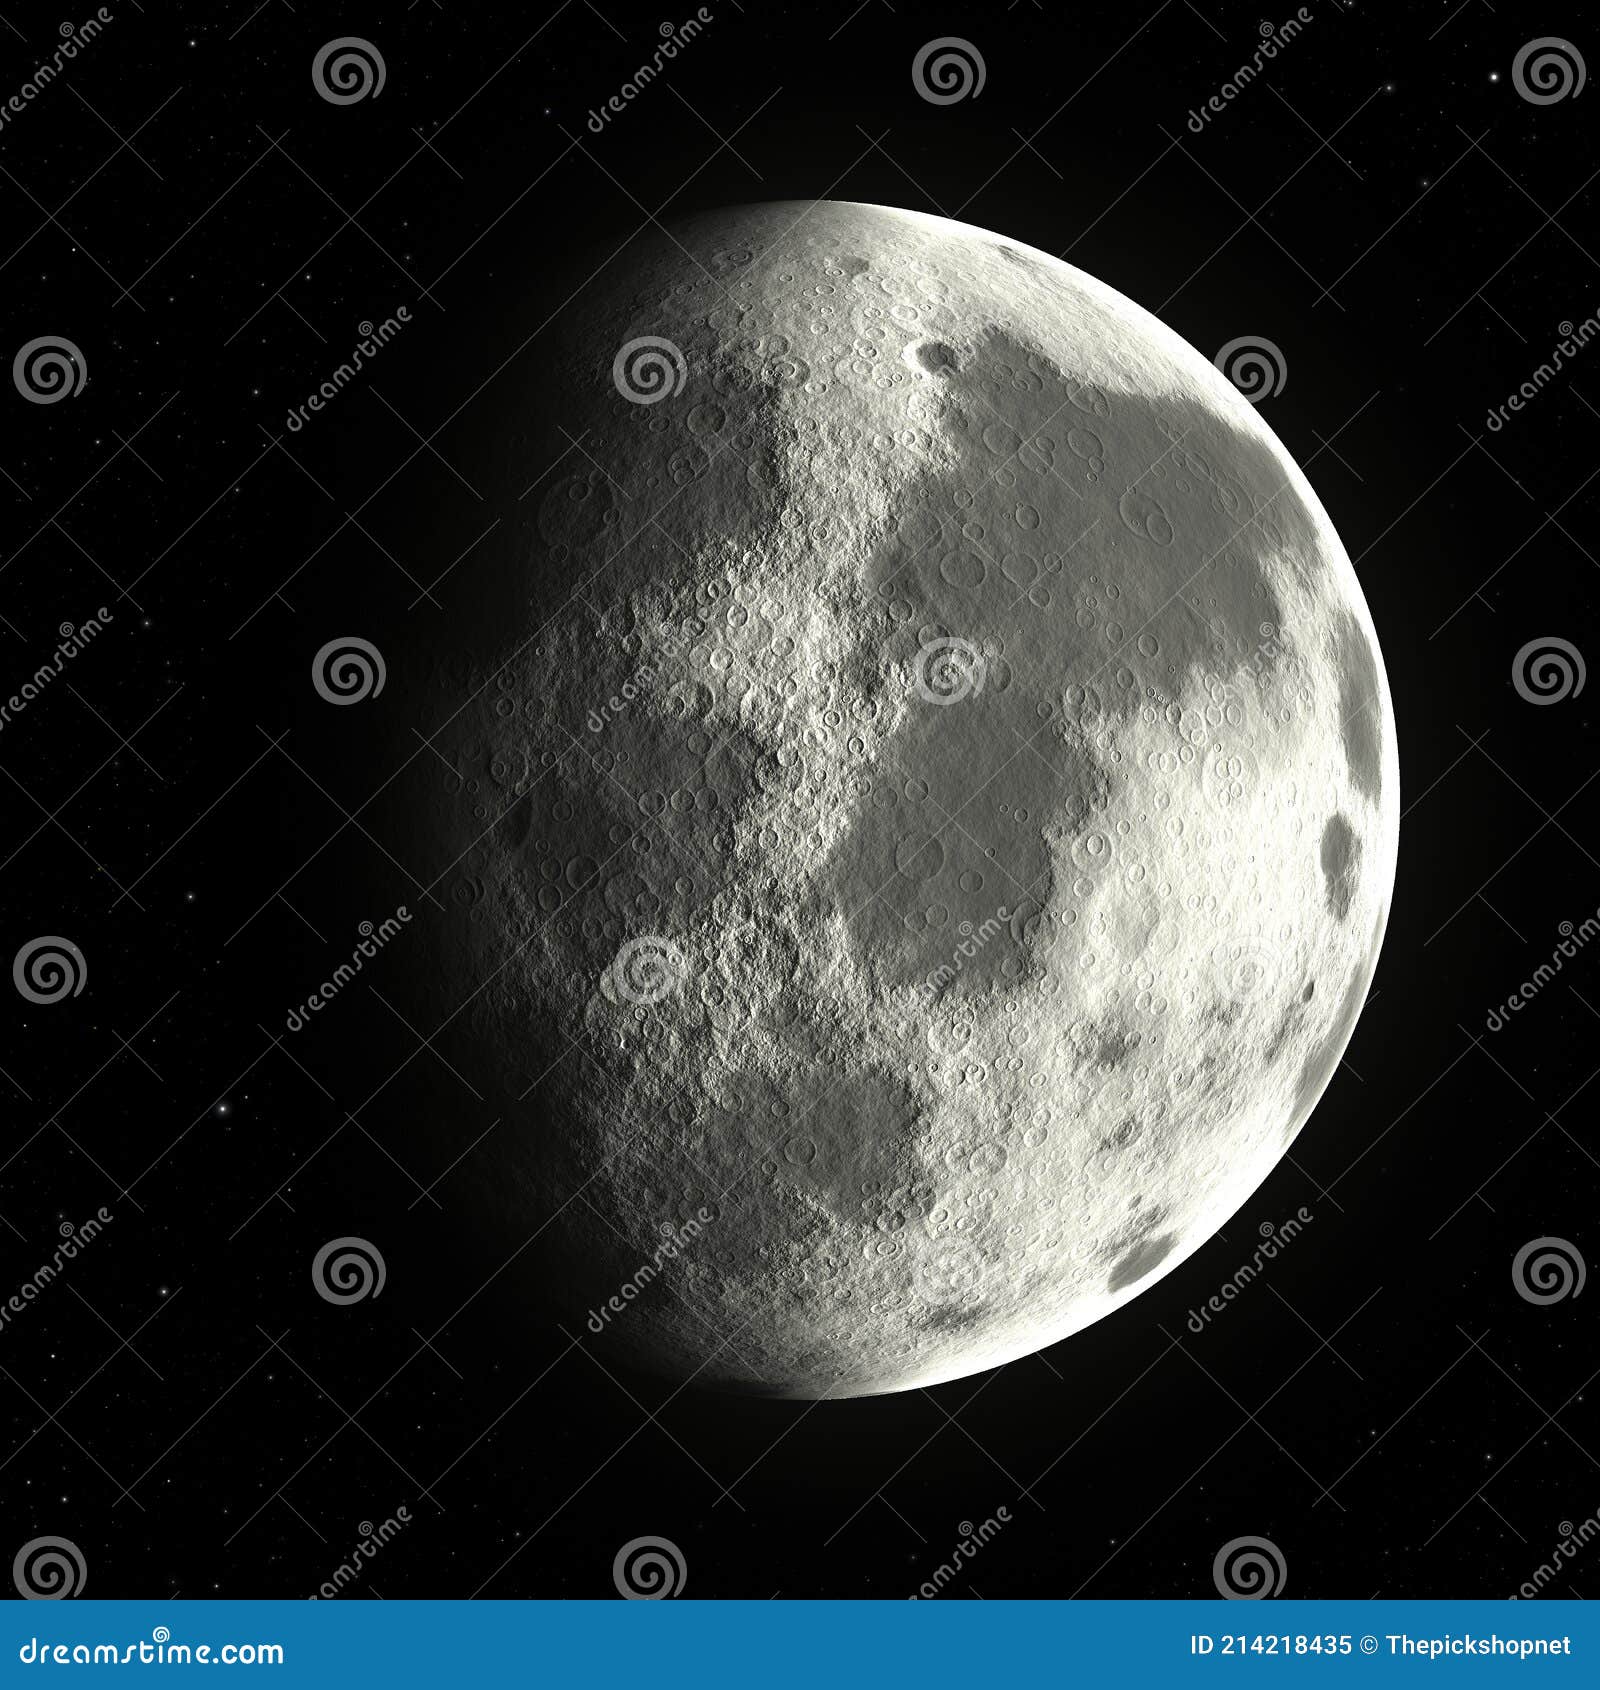 Full Moon - Crescent Moon - CleanPNG / KissPNG